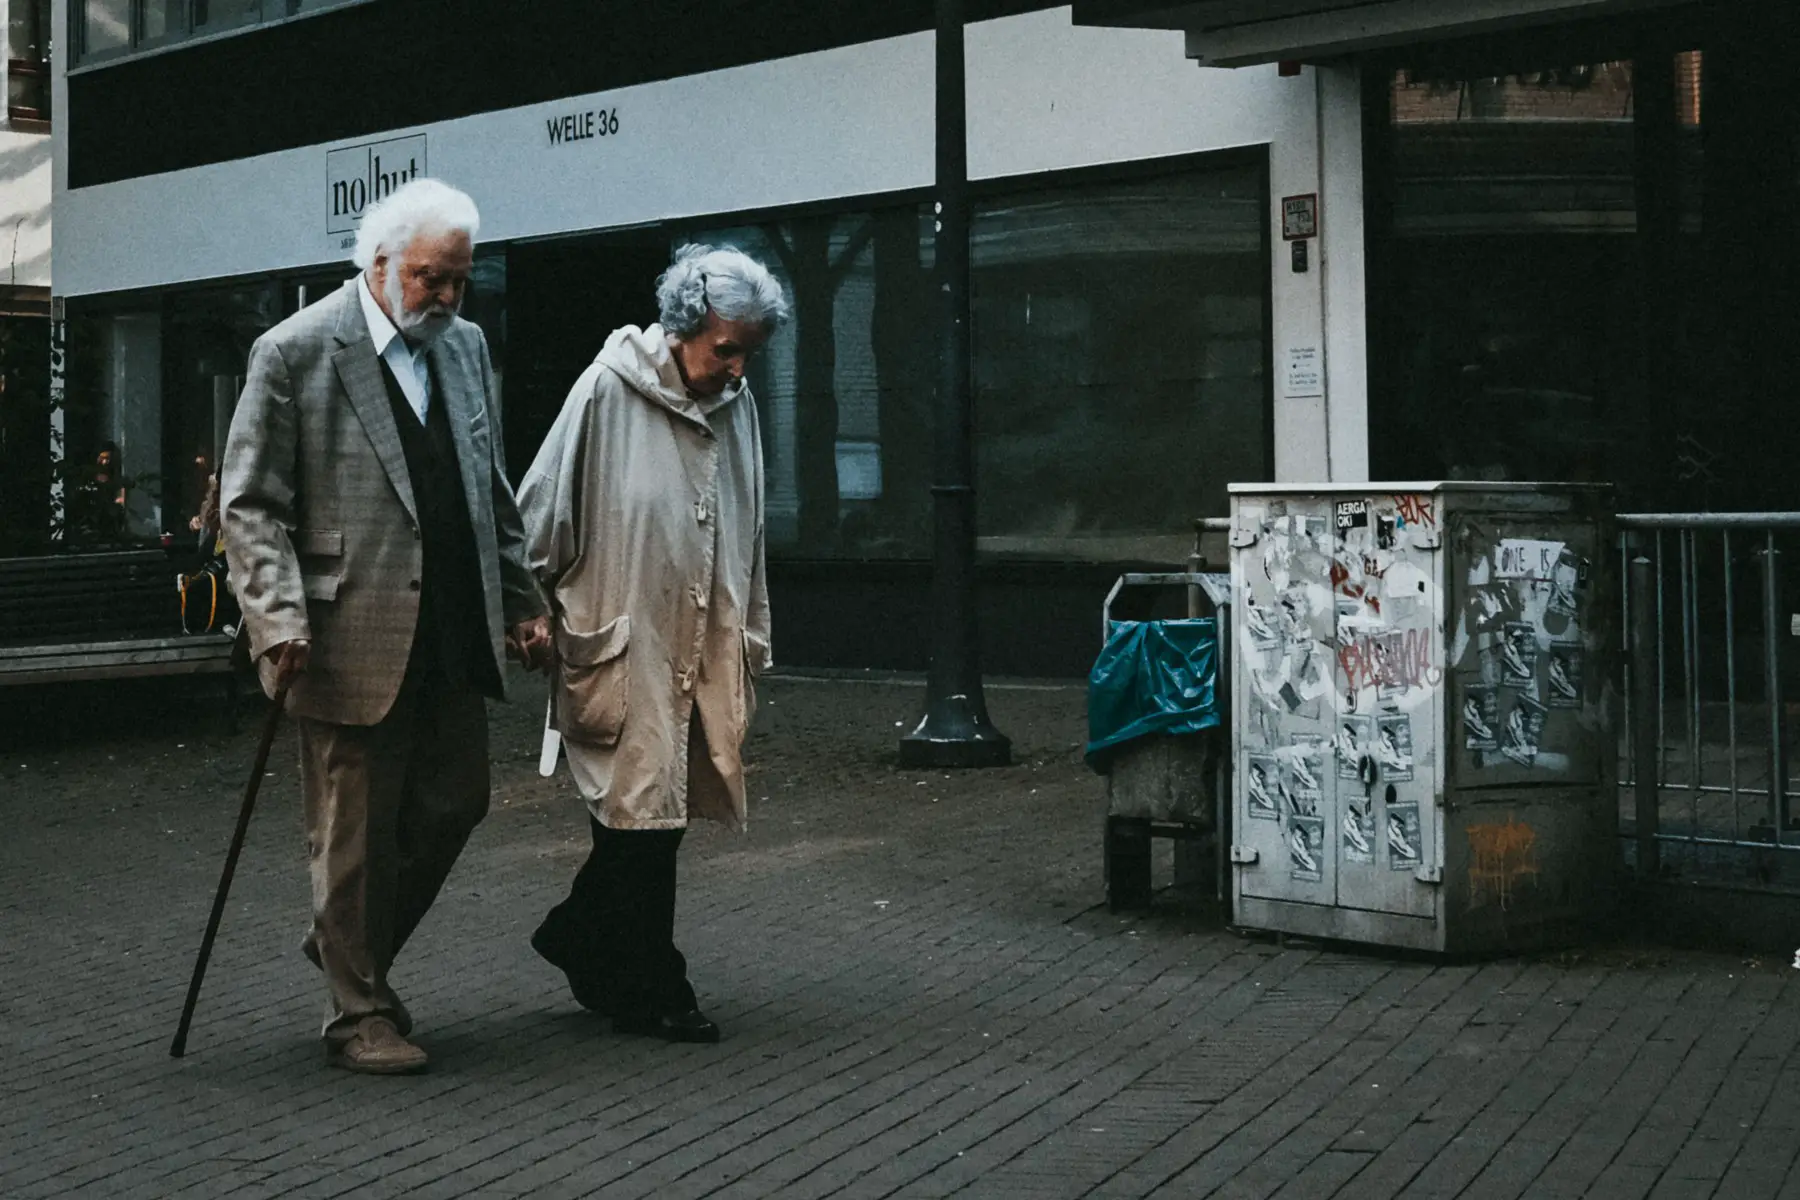 Elderly couple walking hand in hand, in Bielefeld, Germany.